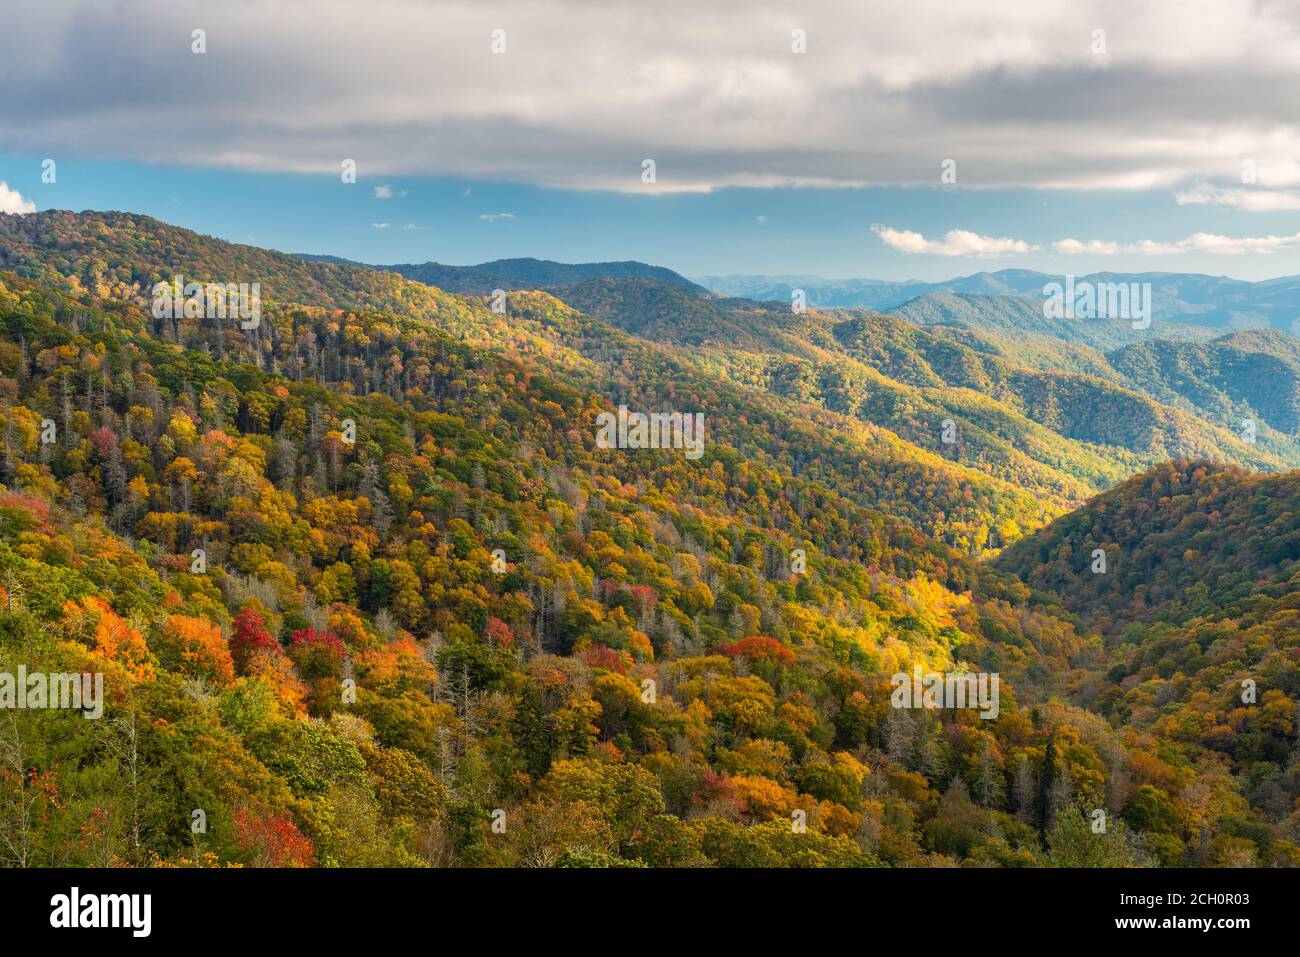 Great Smoky Mountains National Park, Tennessee, EE.UU. domina la recién pasada en otoño. Foto de stock